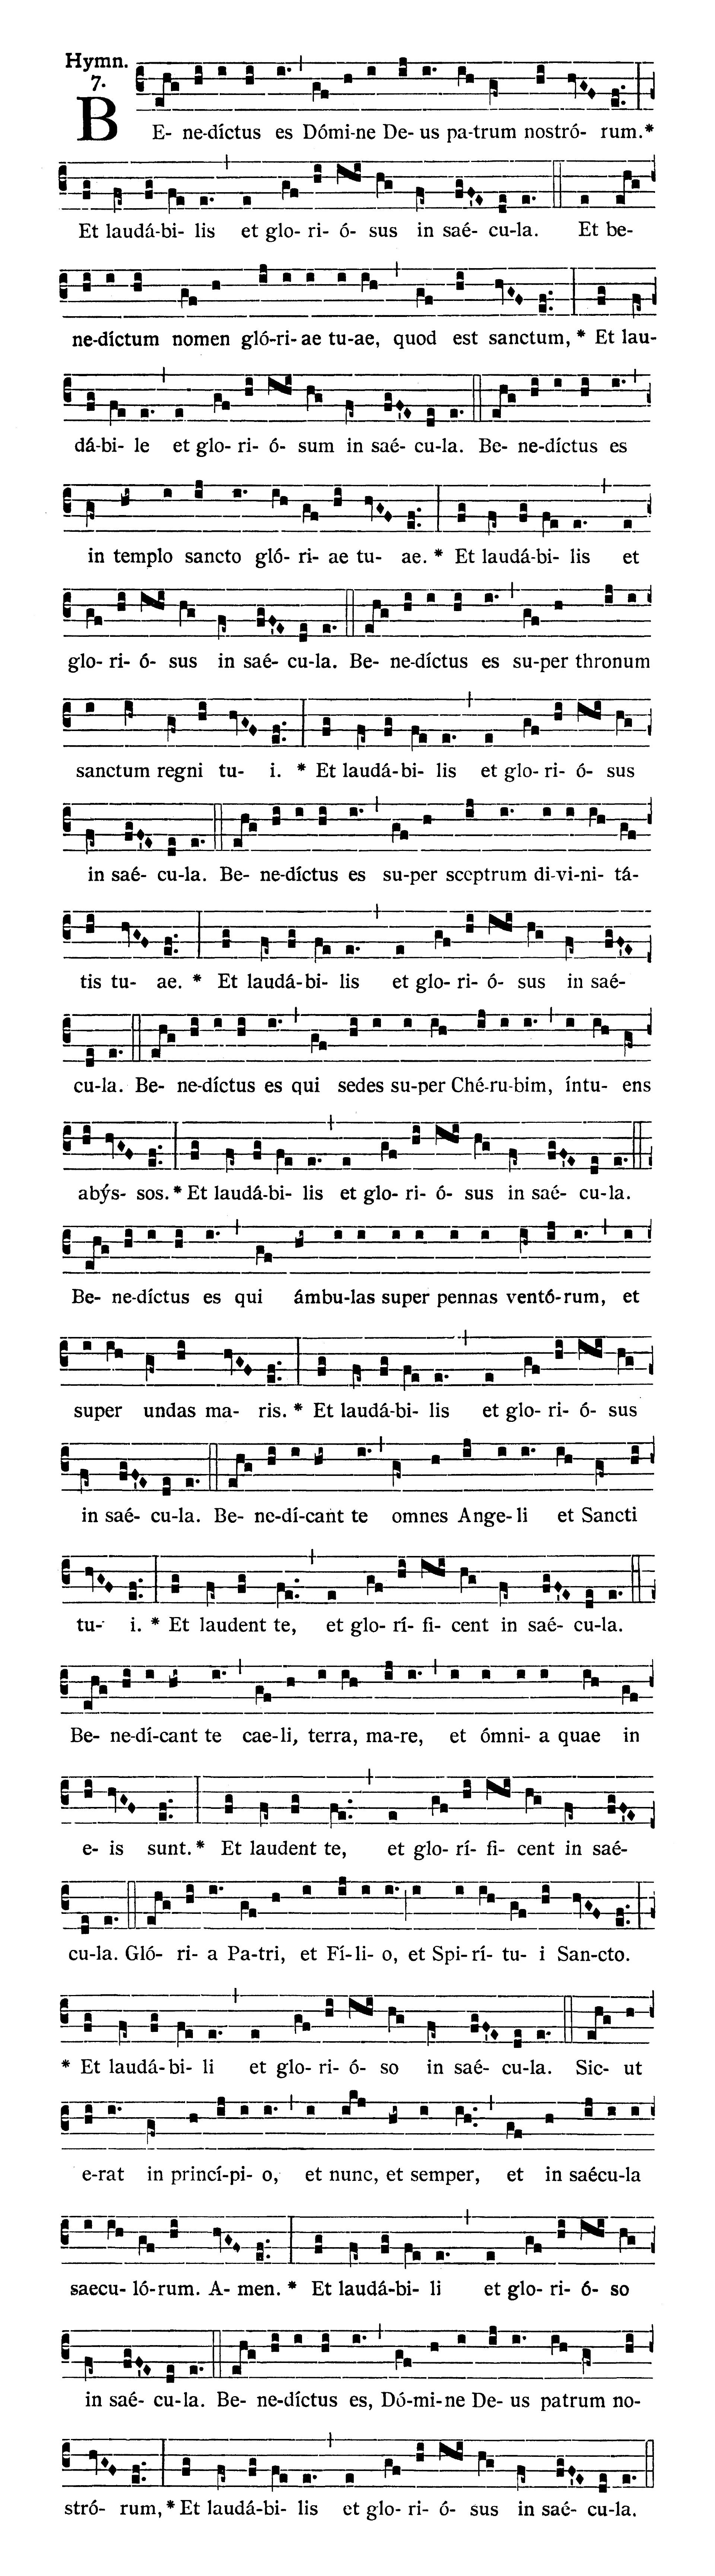 Sabbato Quatuor Temporum Quadragesimae (Ember Saturday of Lent) - Hymnus (Benedictus es)